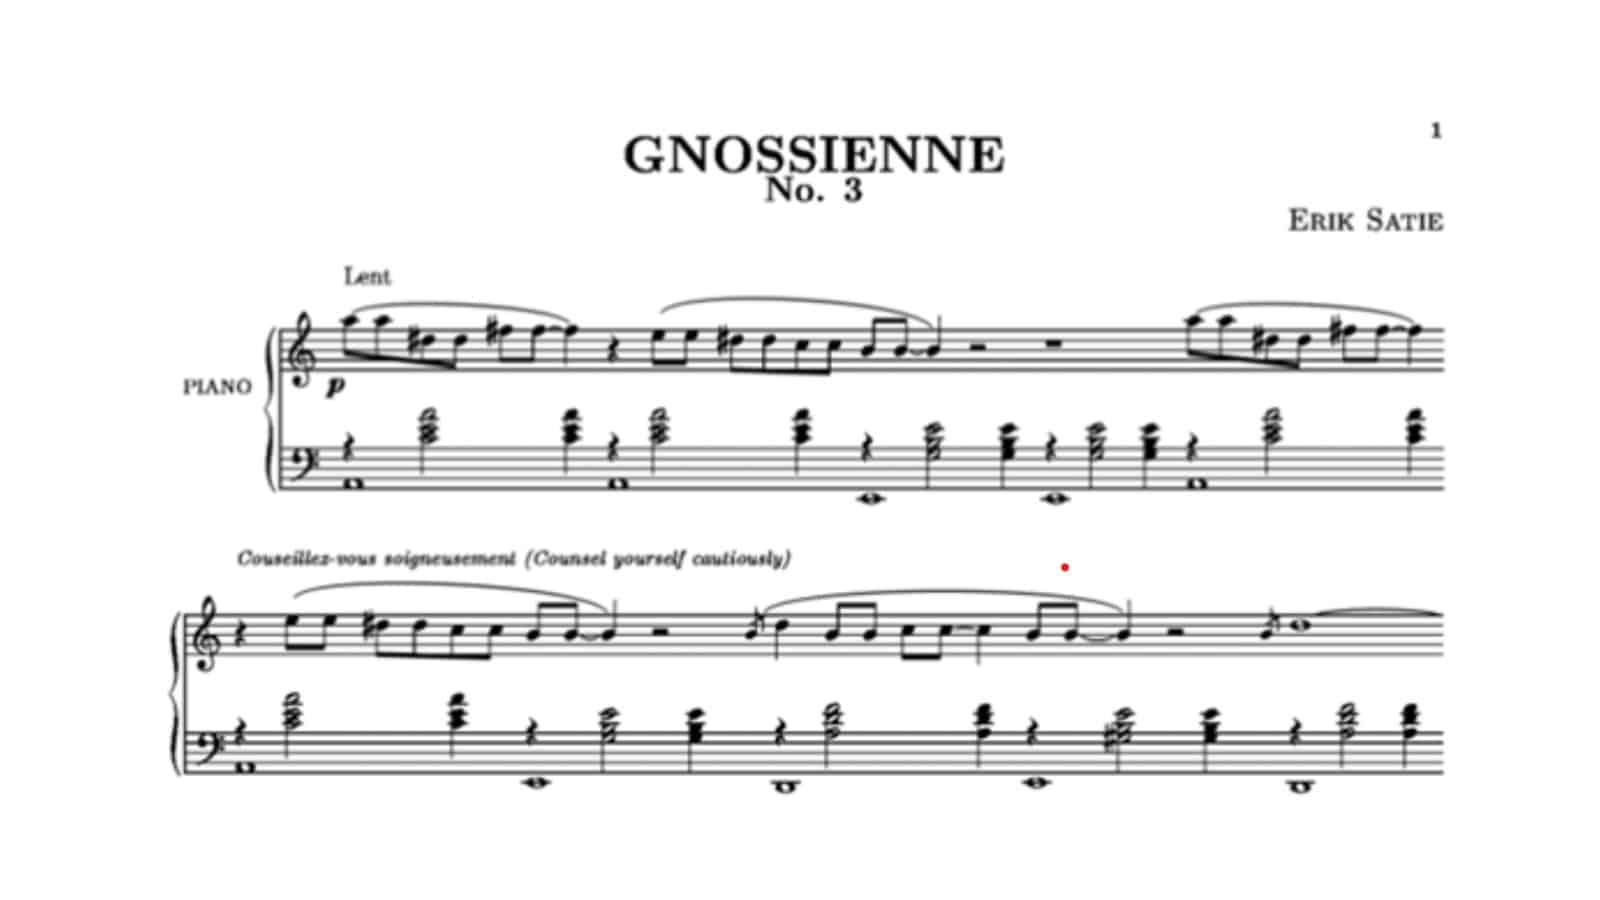 Erik Satie's Gnossienne (No.3)